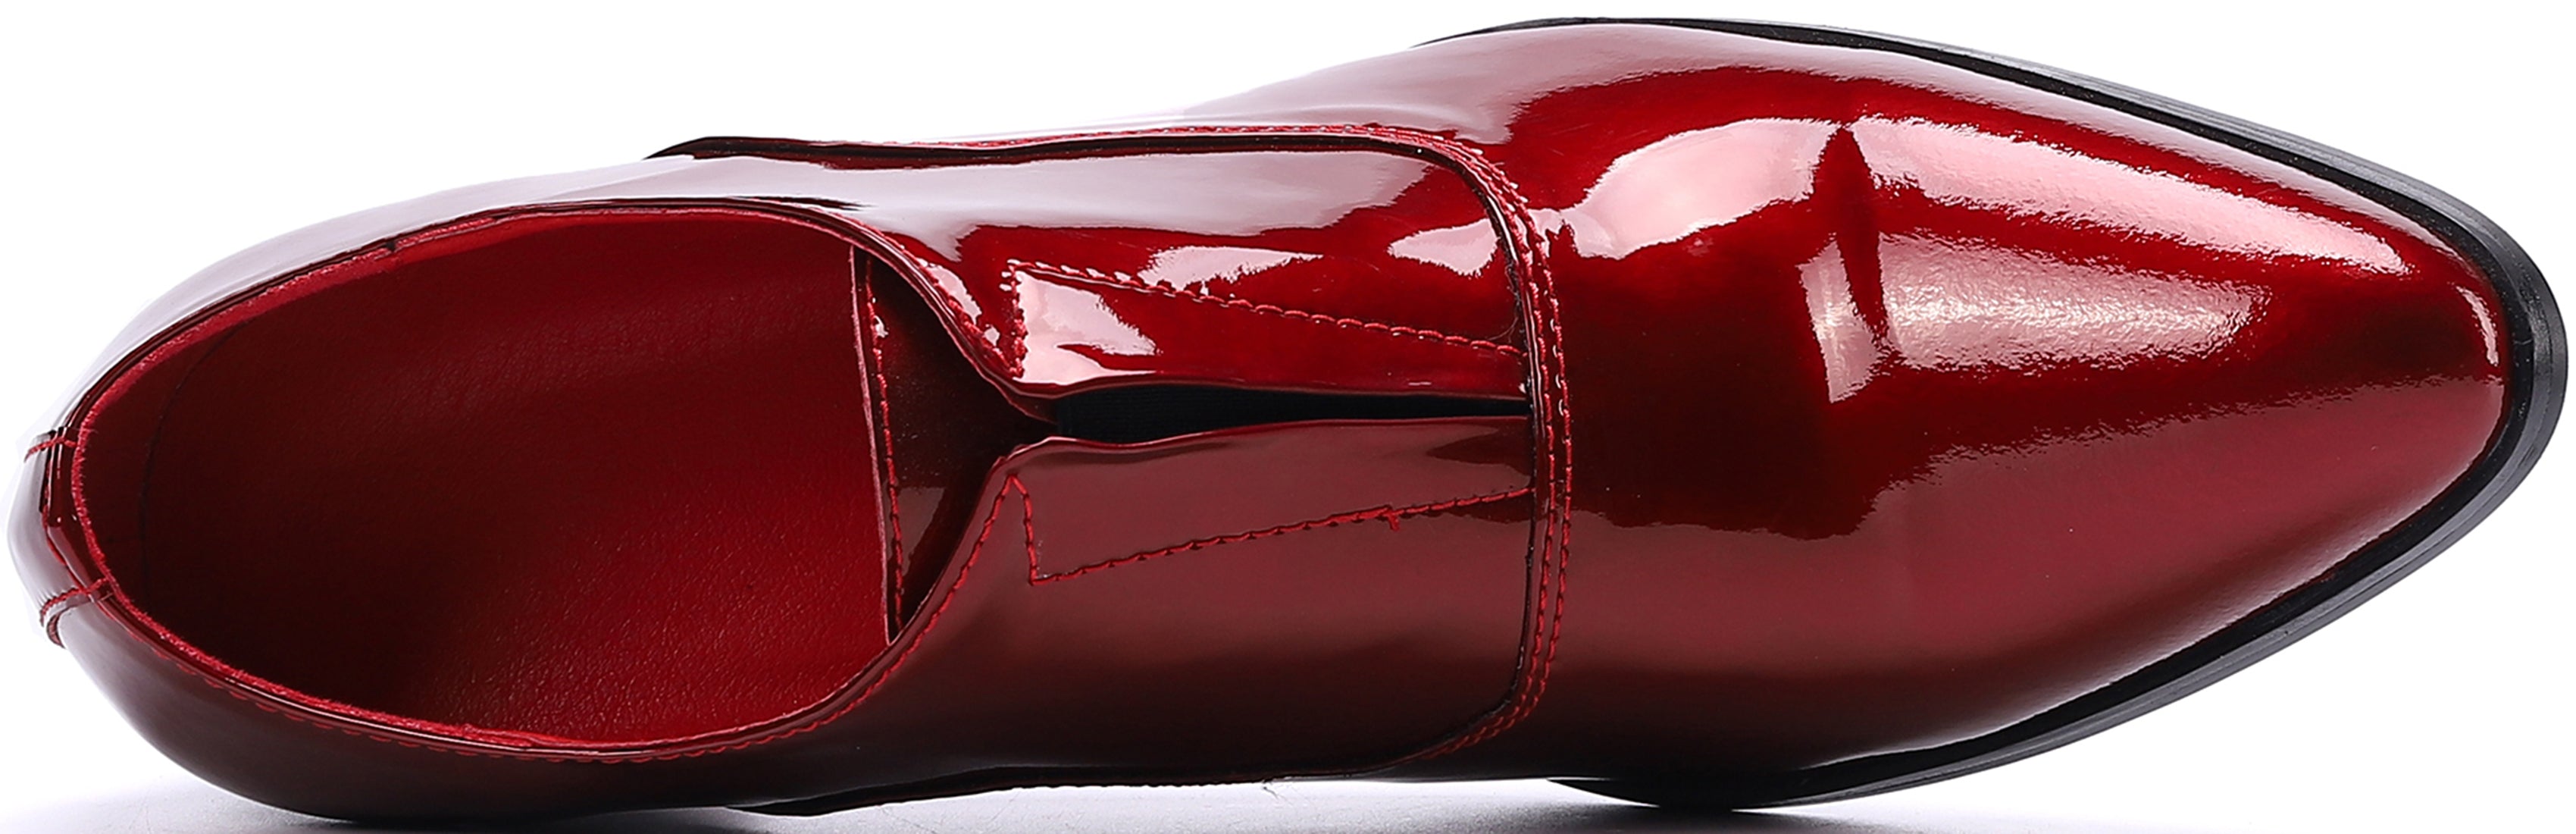 Men's Slip-on Cuban Heel Leather Loafer